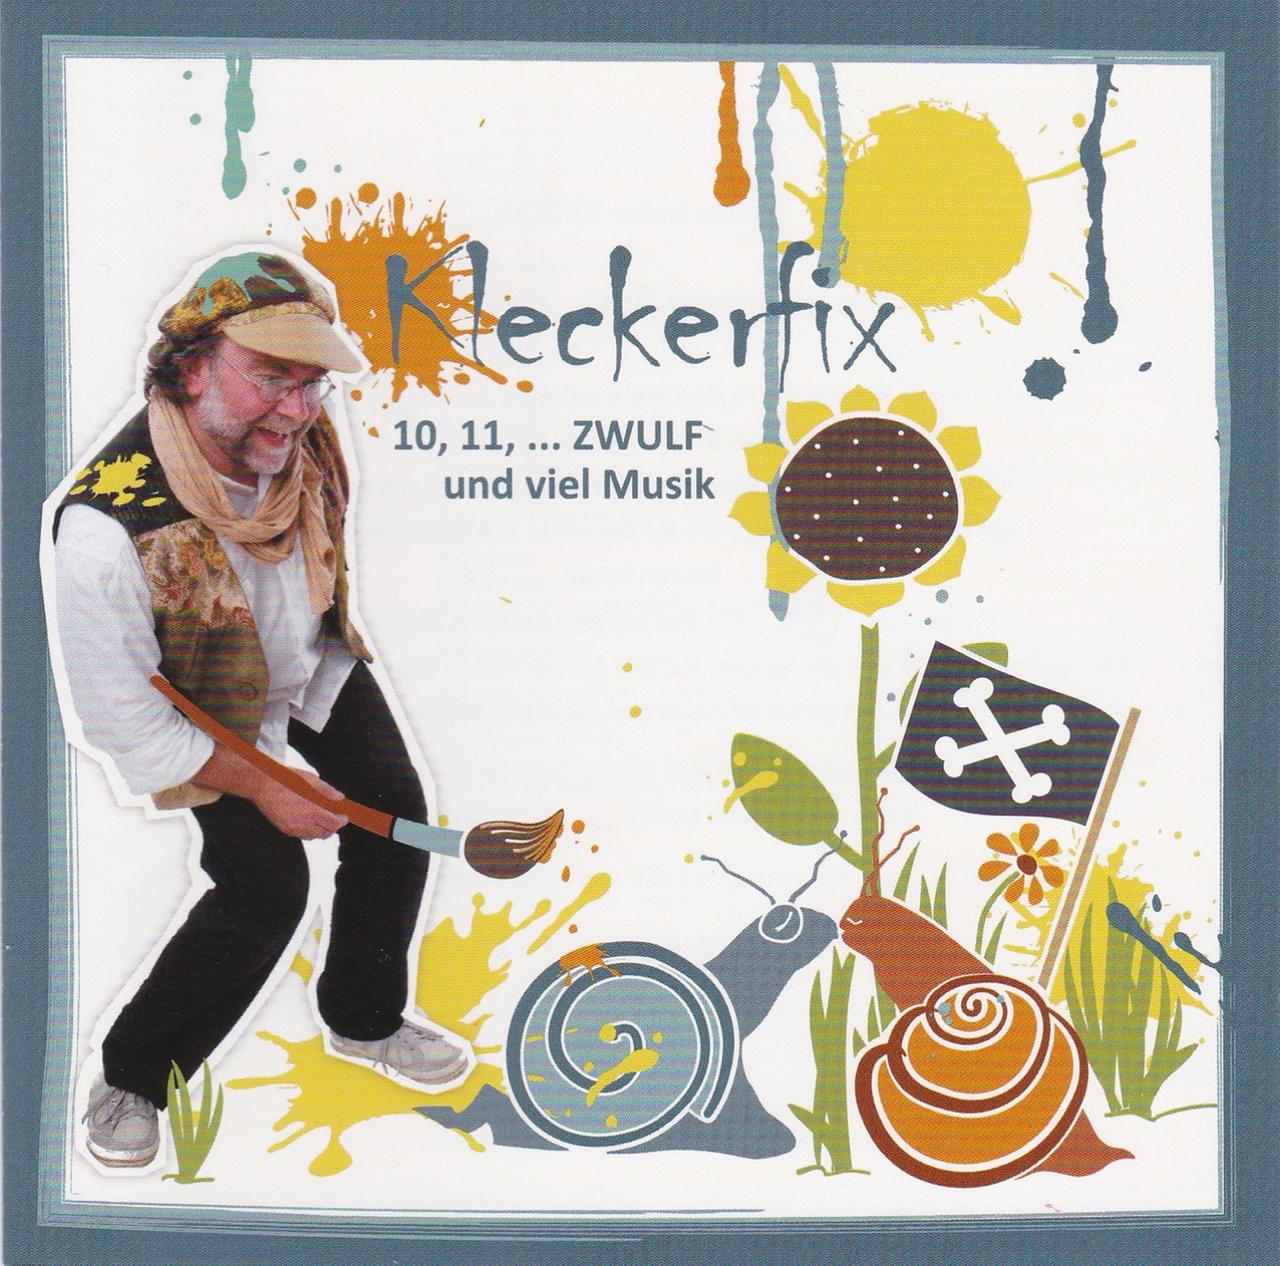 Cover CD "Kleckerfix" von Zwulf.